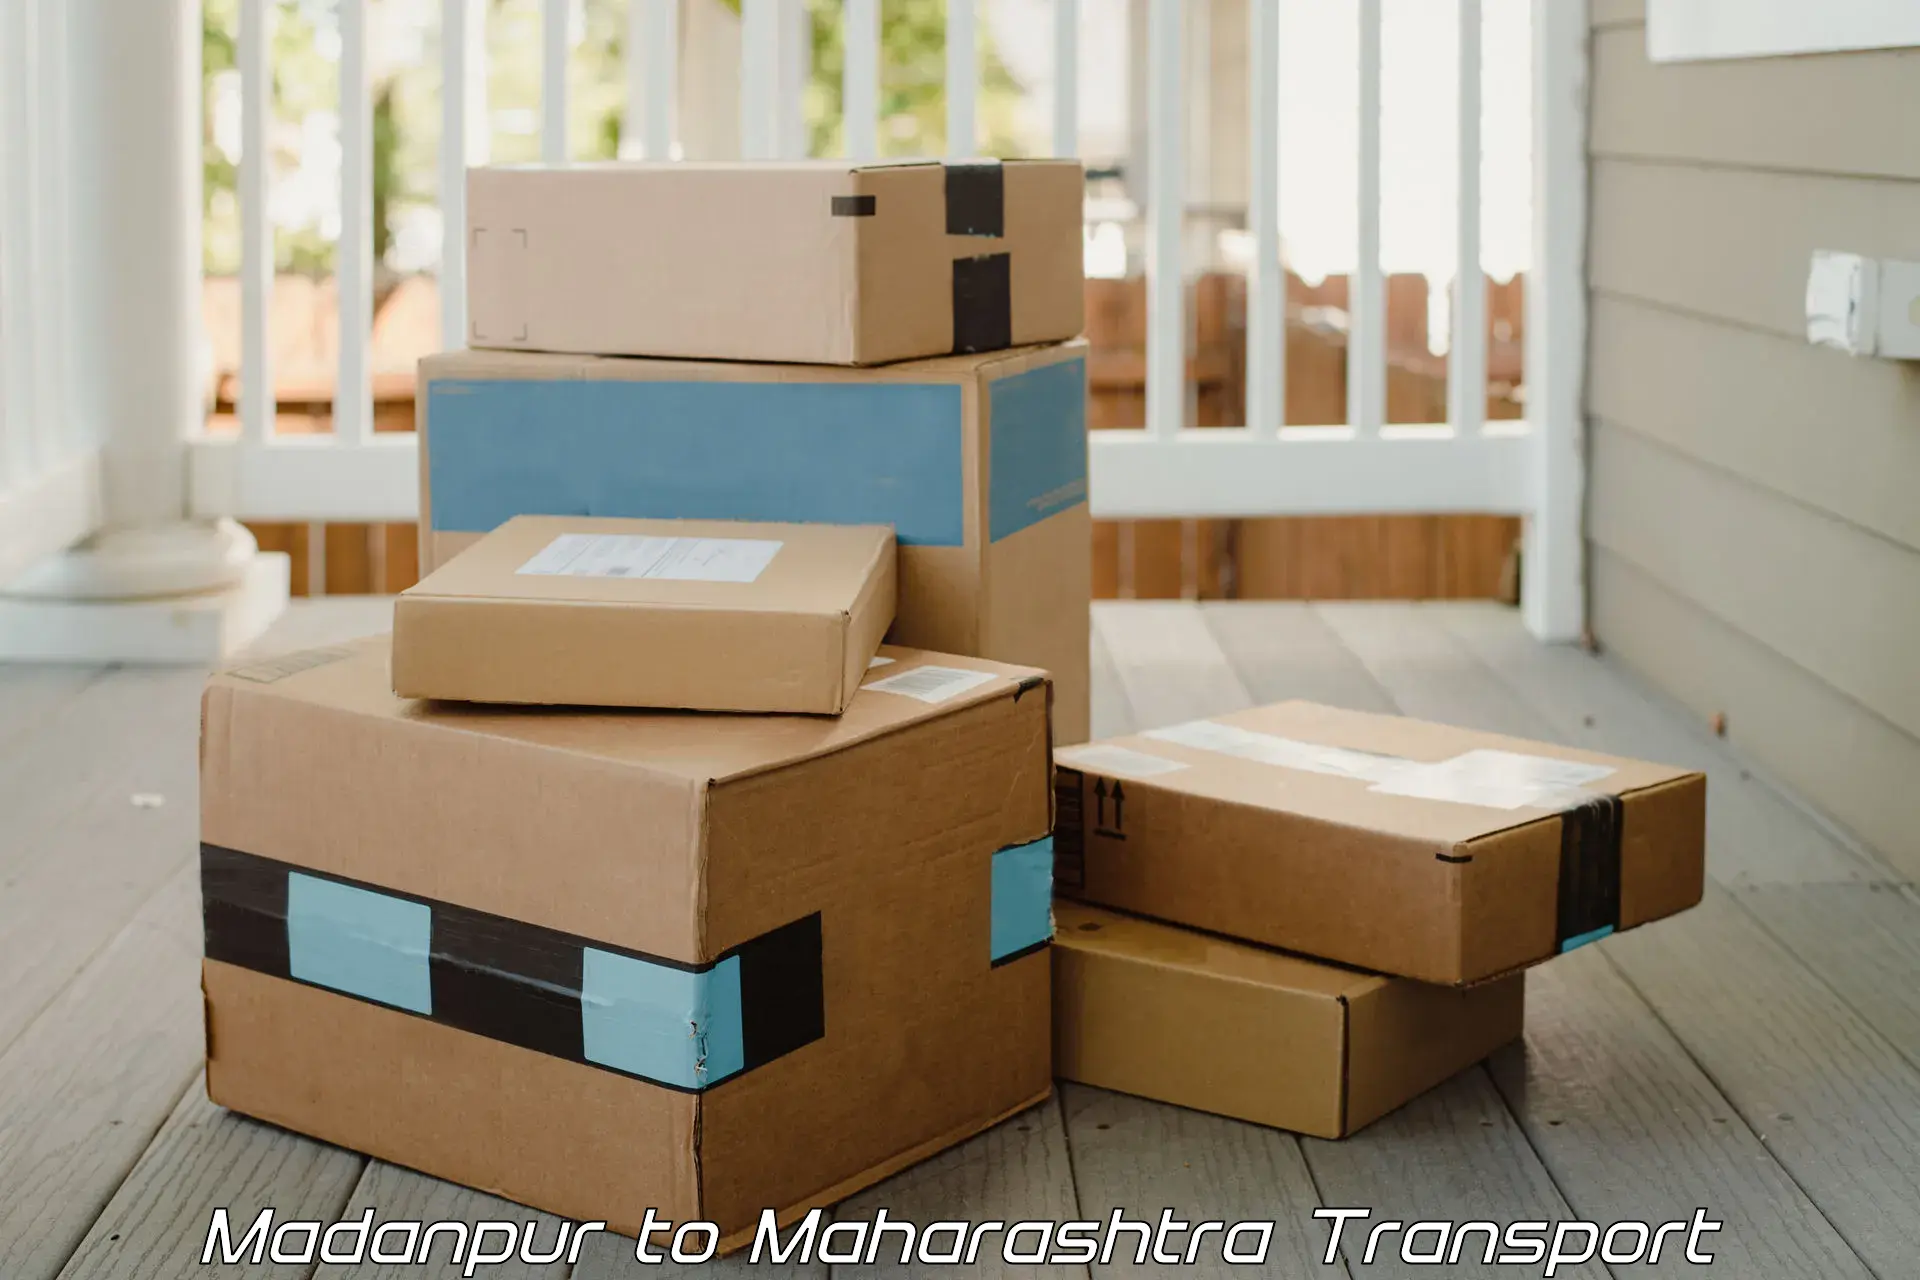 Lorry transport service Madanpur to Walchandnagar